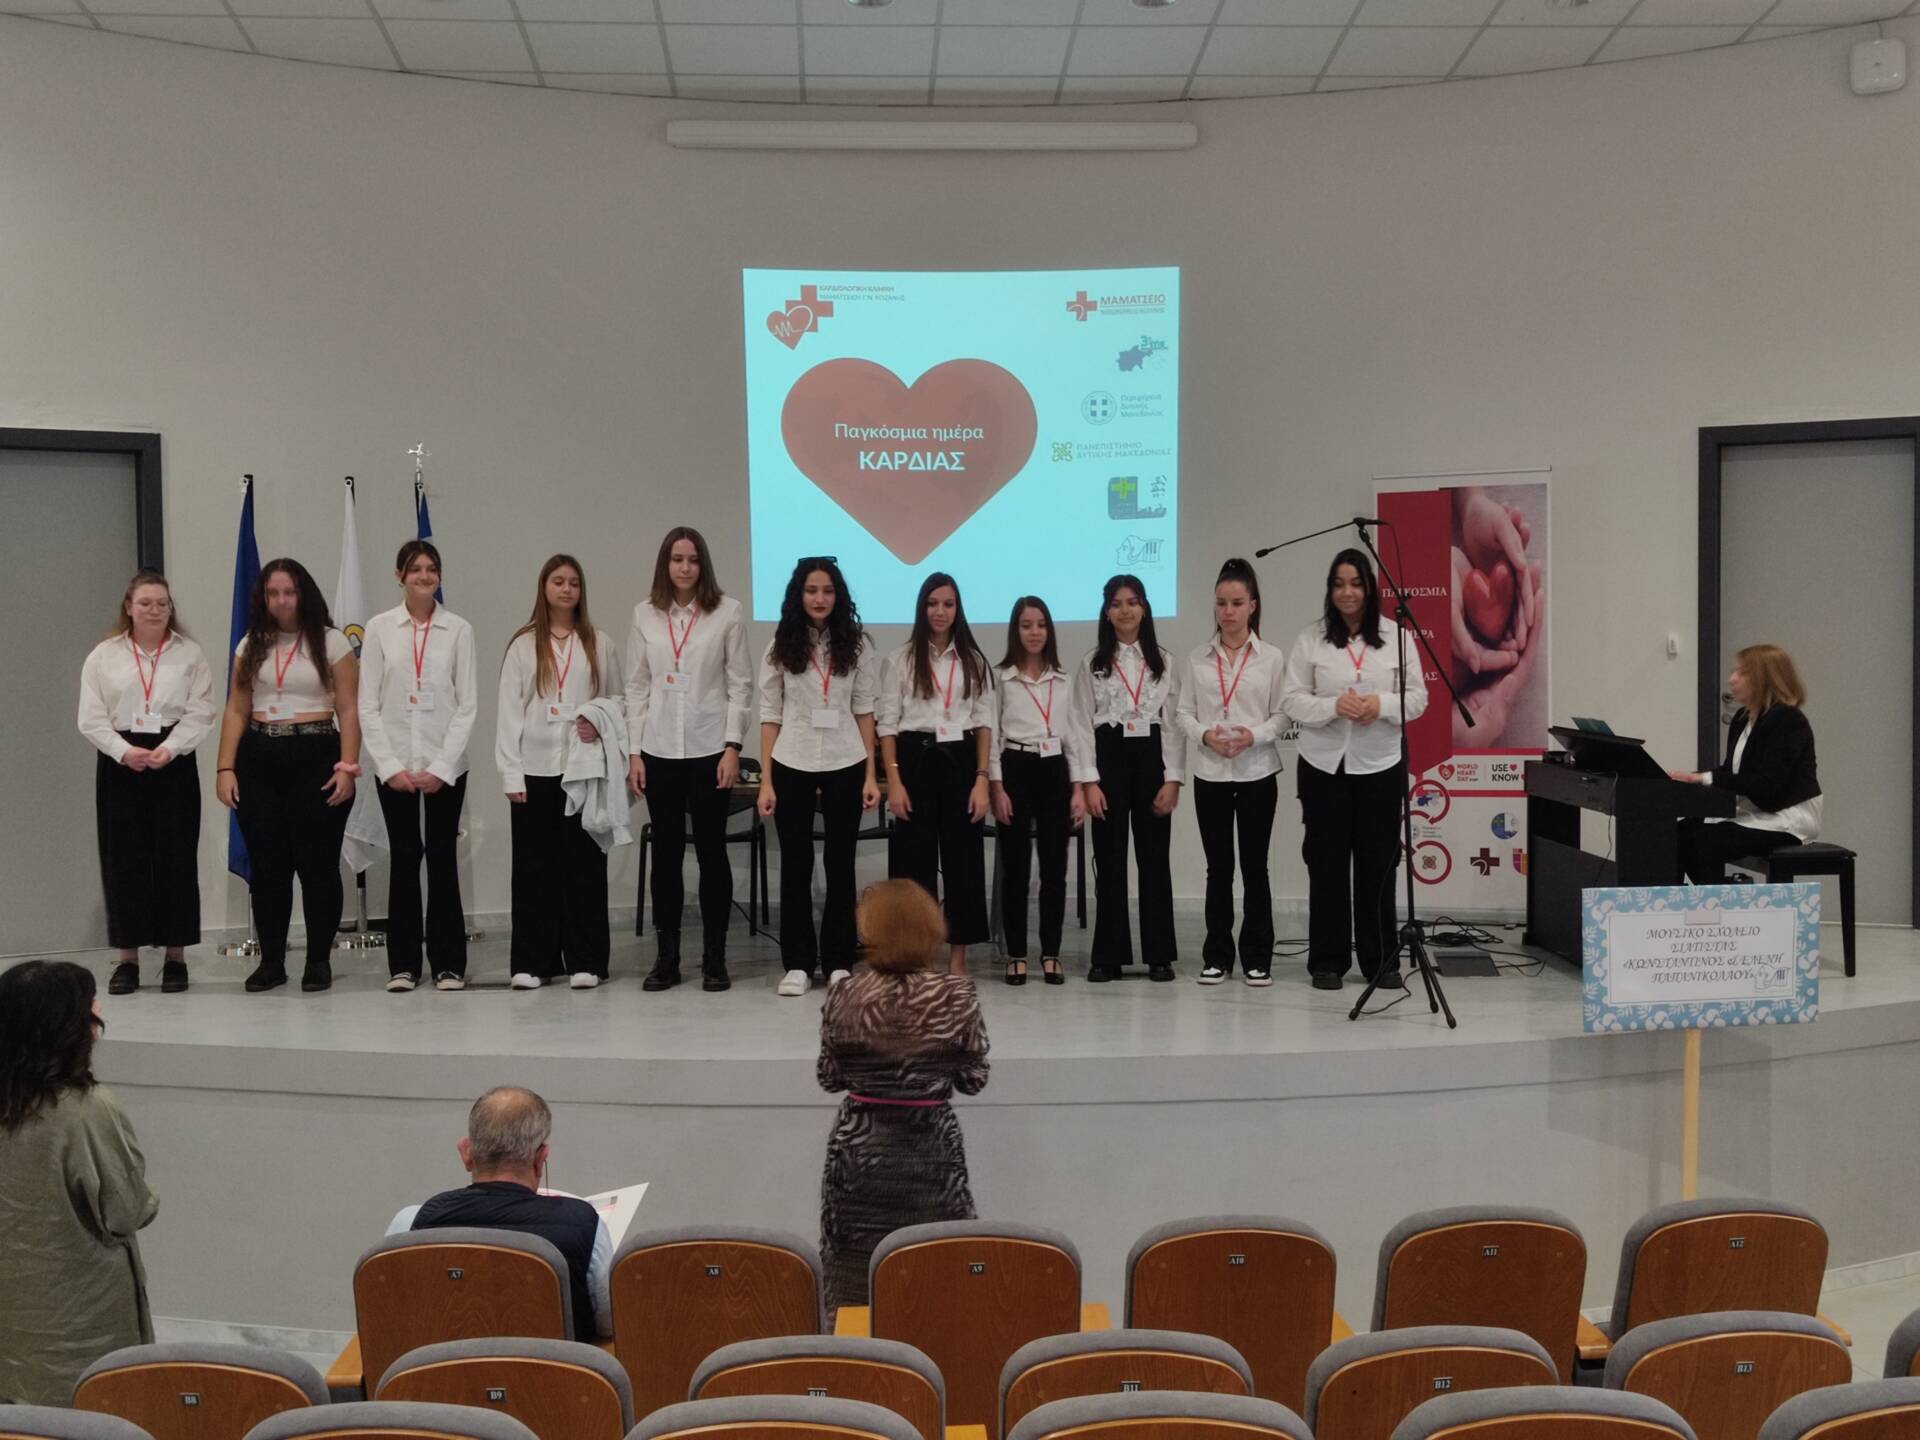 Το Μουσικό Σχολείο Σιάτιστας στο Πανεπιστήμιο Δυτικής Μακεδονίας